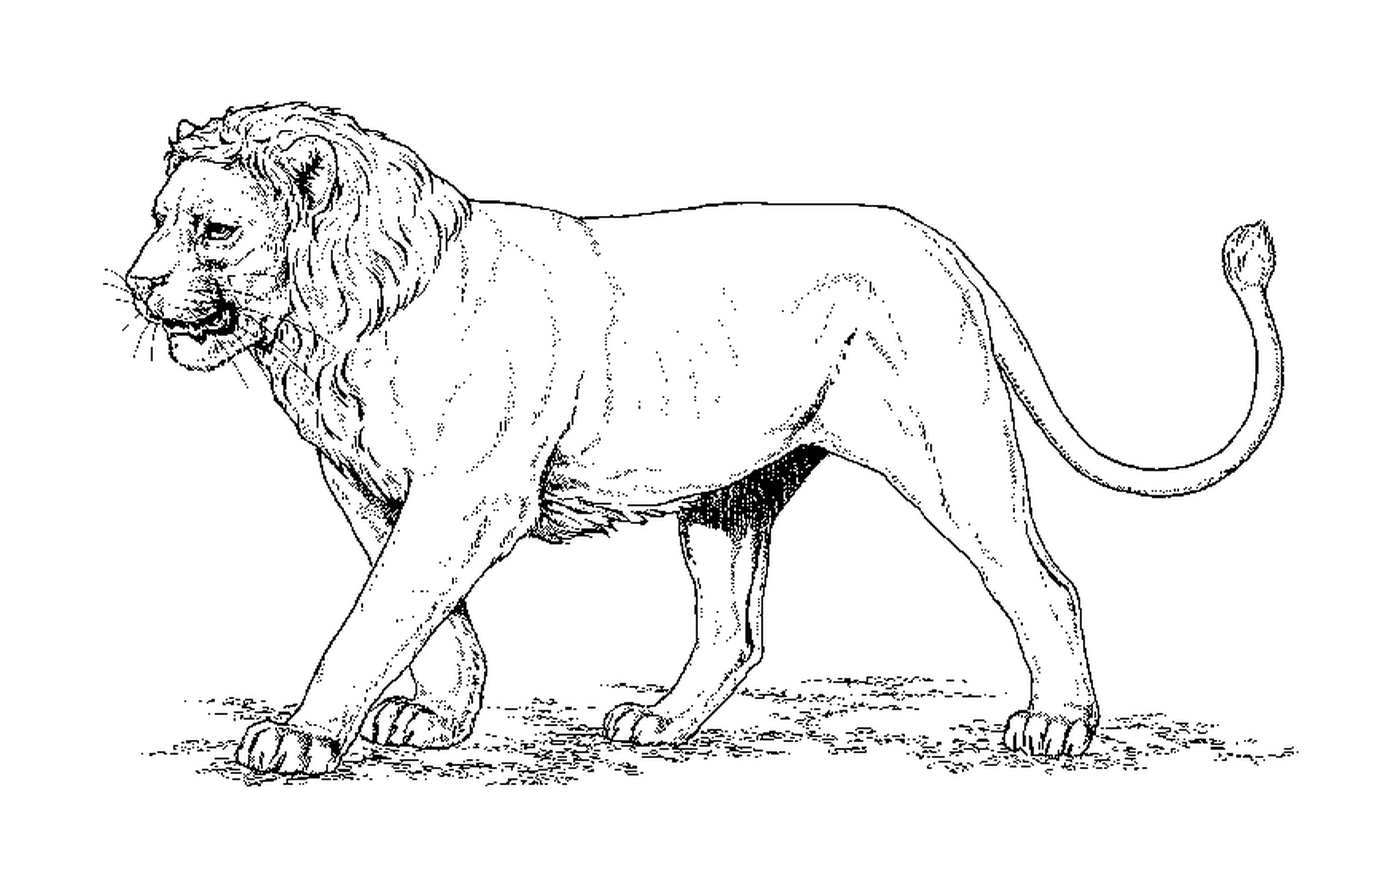  Западноафриканский лев 